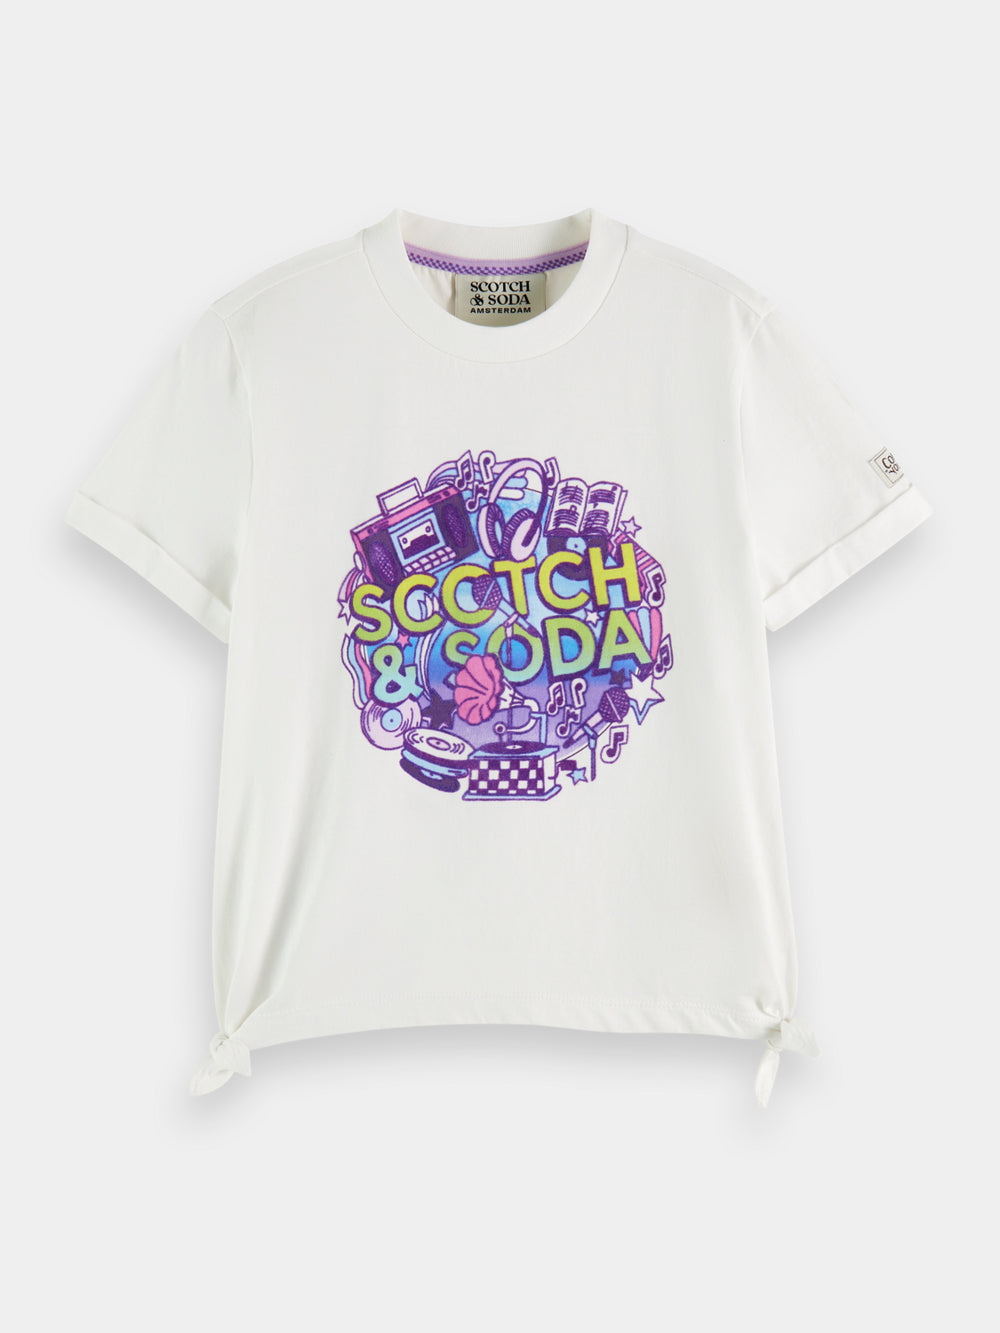 Kids - Relaxed-fit logo artwork t-shirt - Scotch & Soda NZ